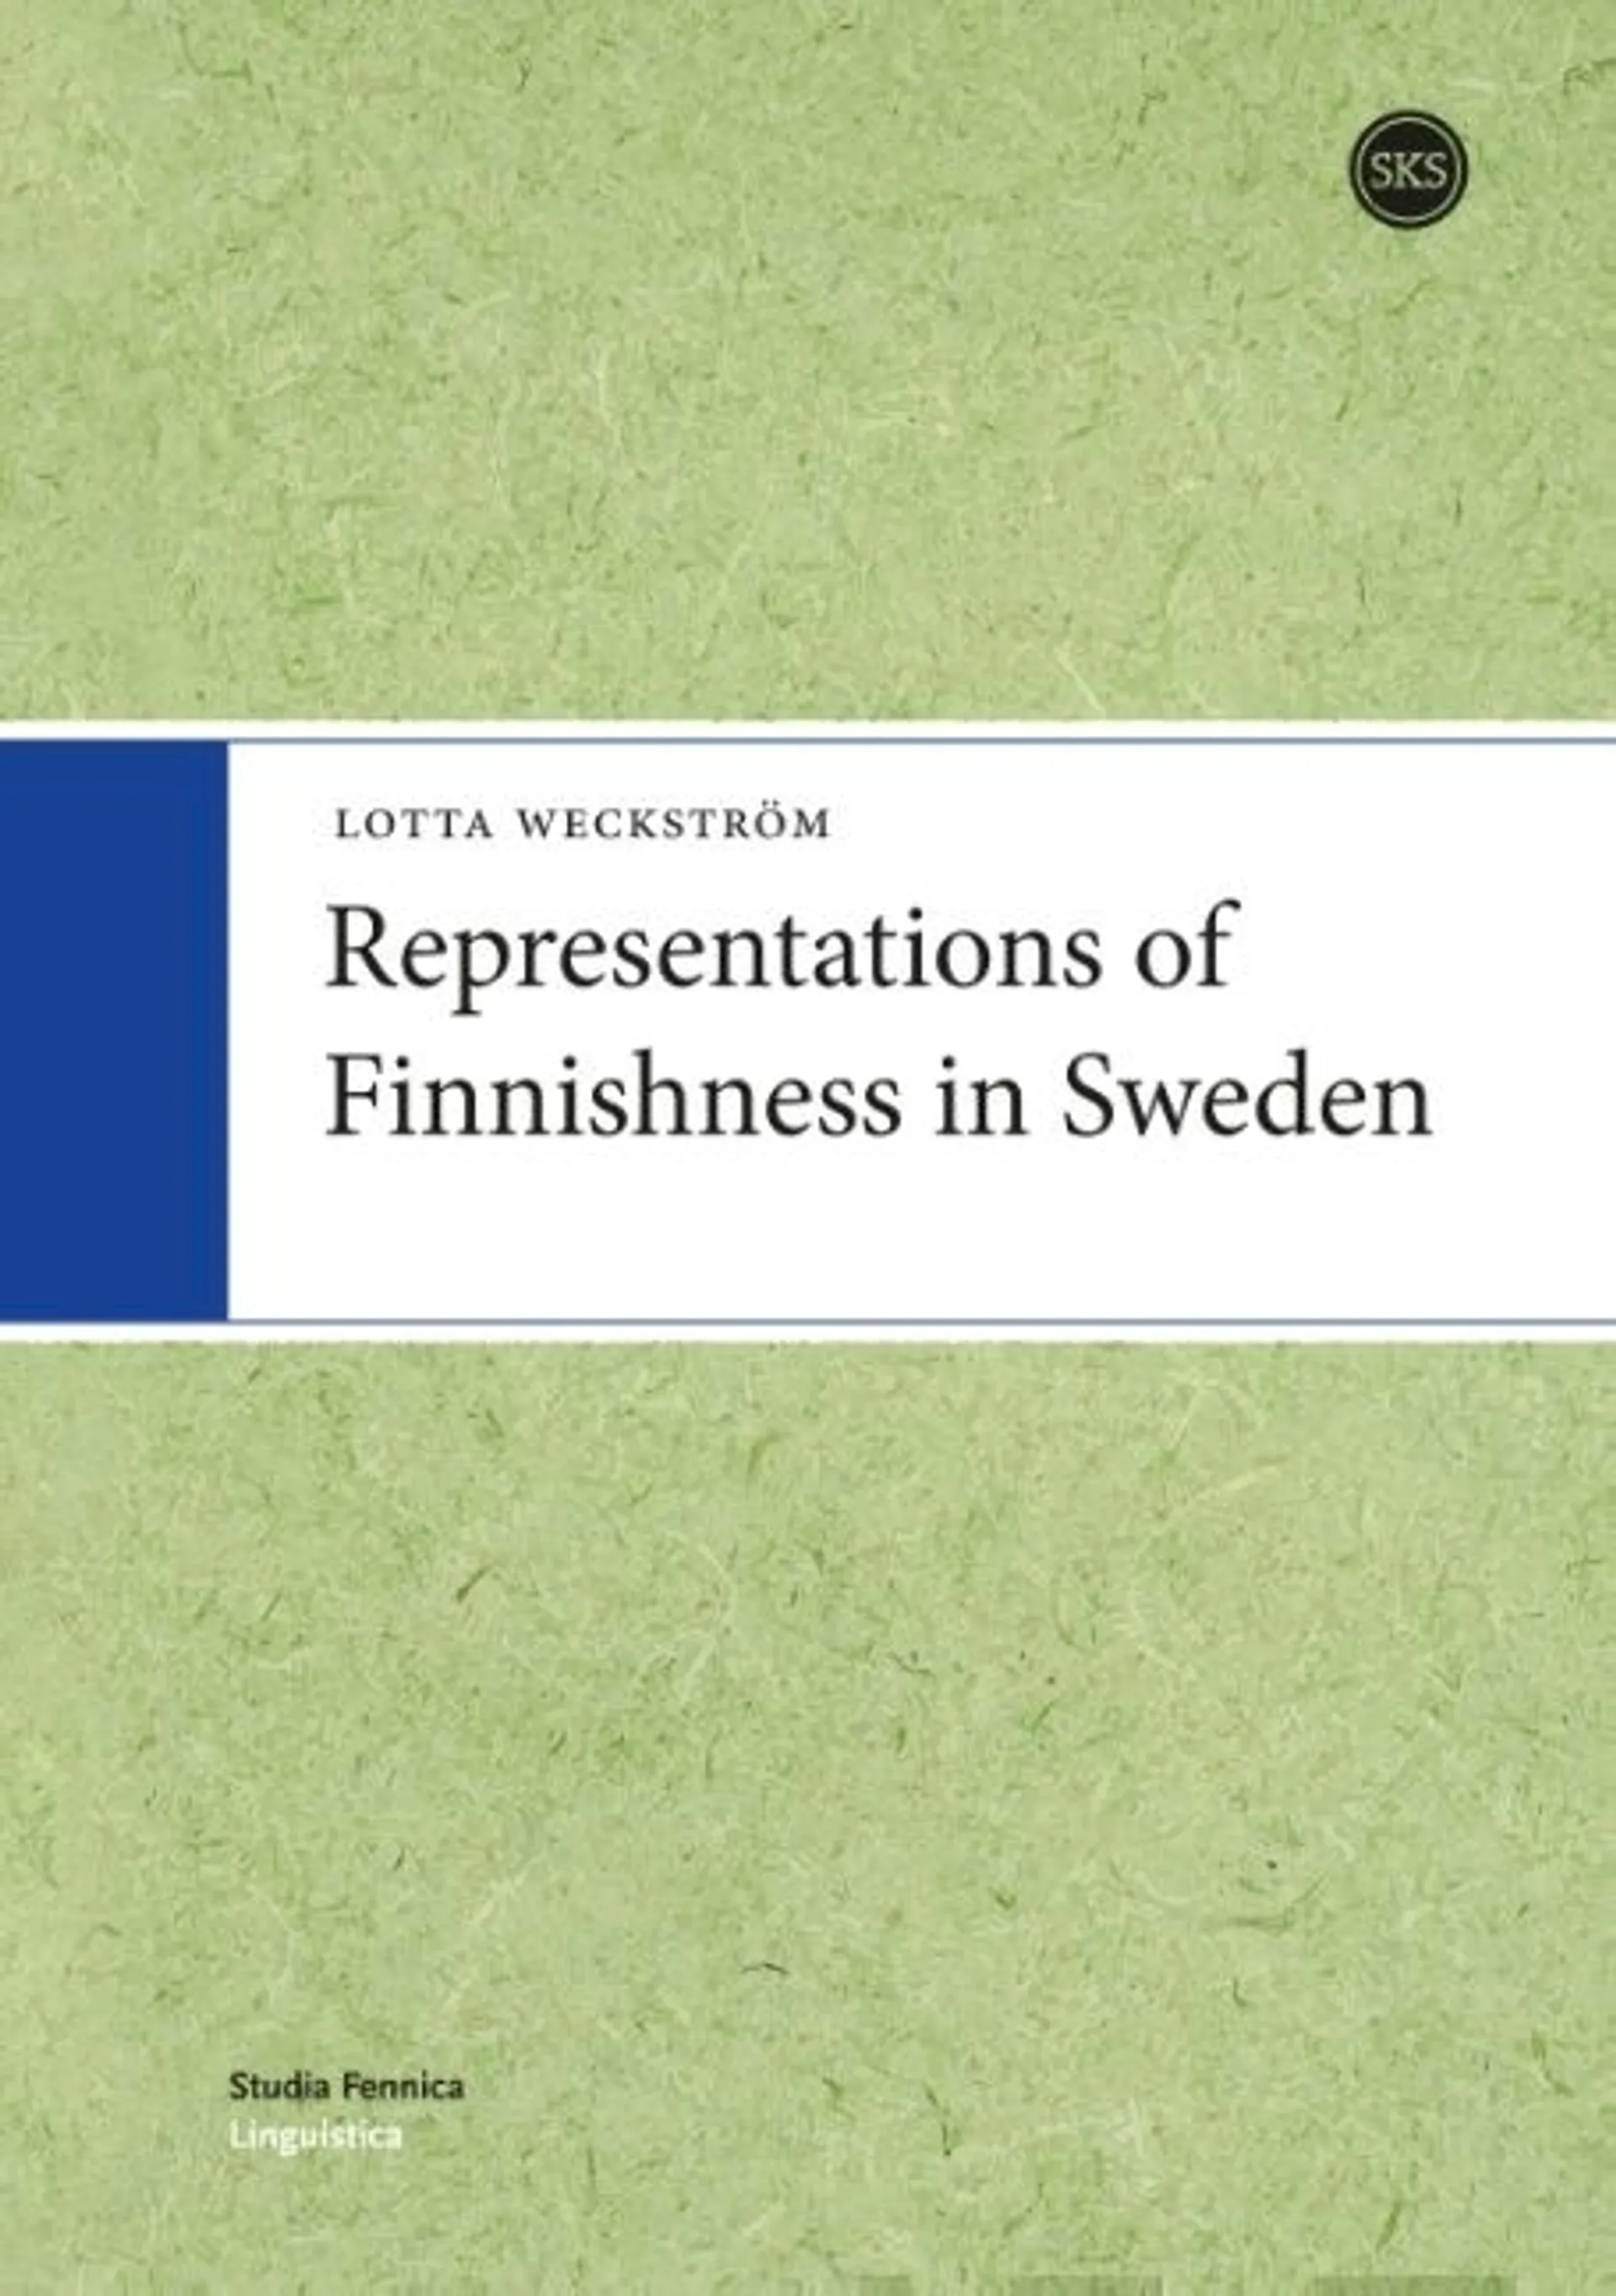 Weckström, Representations of Finnishness in Sweden